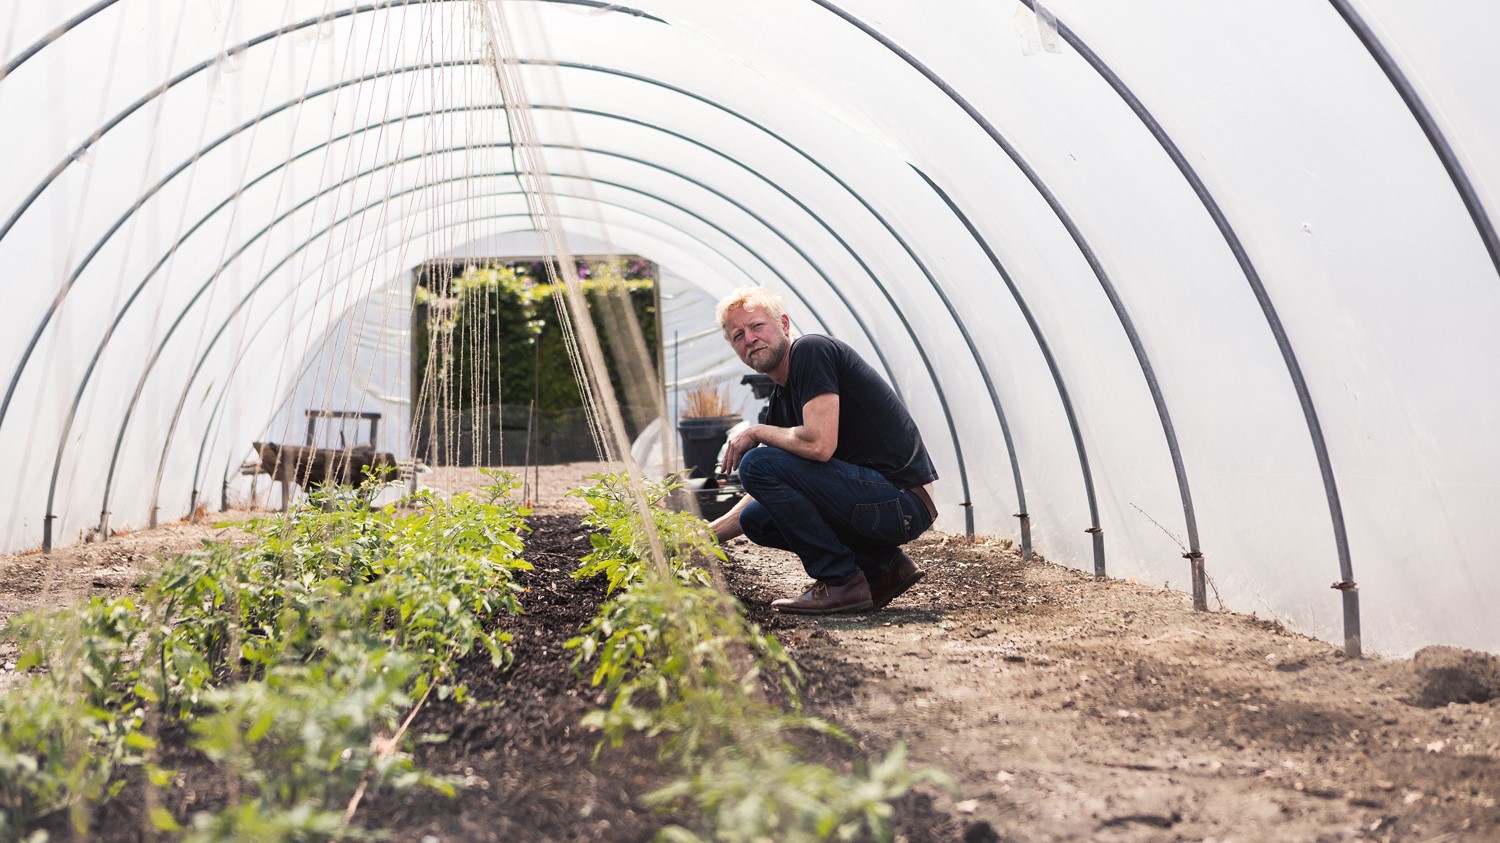 Ben is growing pesticide-free vegetables at Tillingham